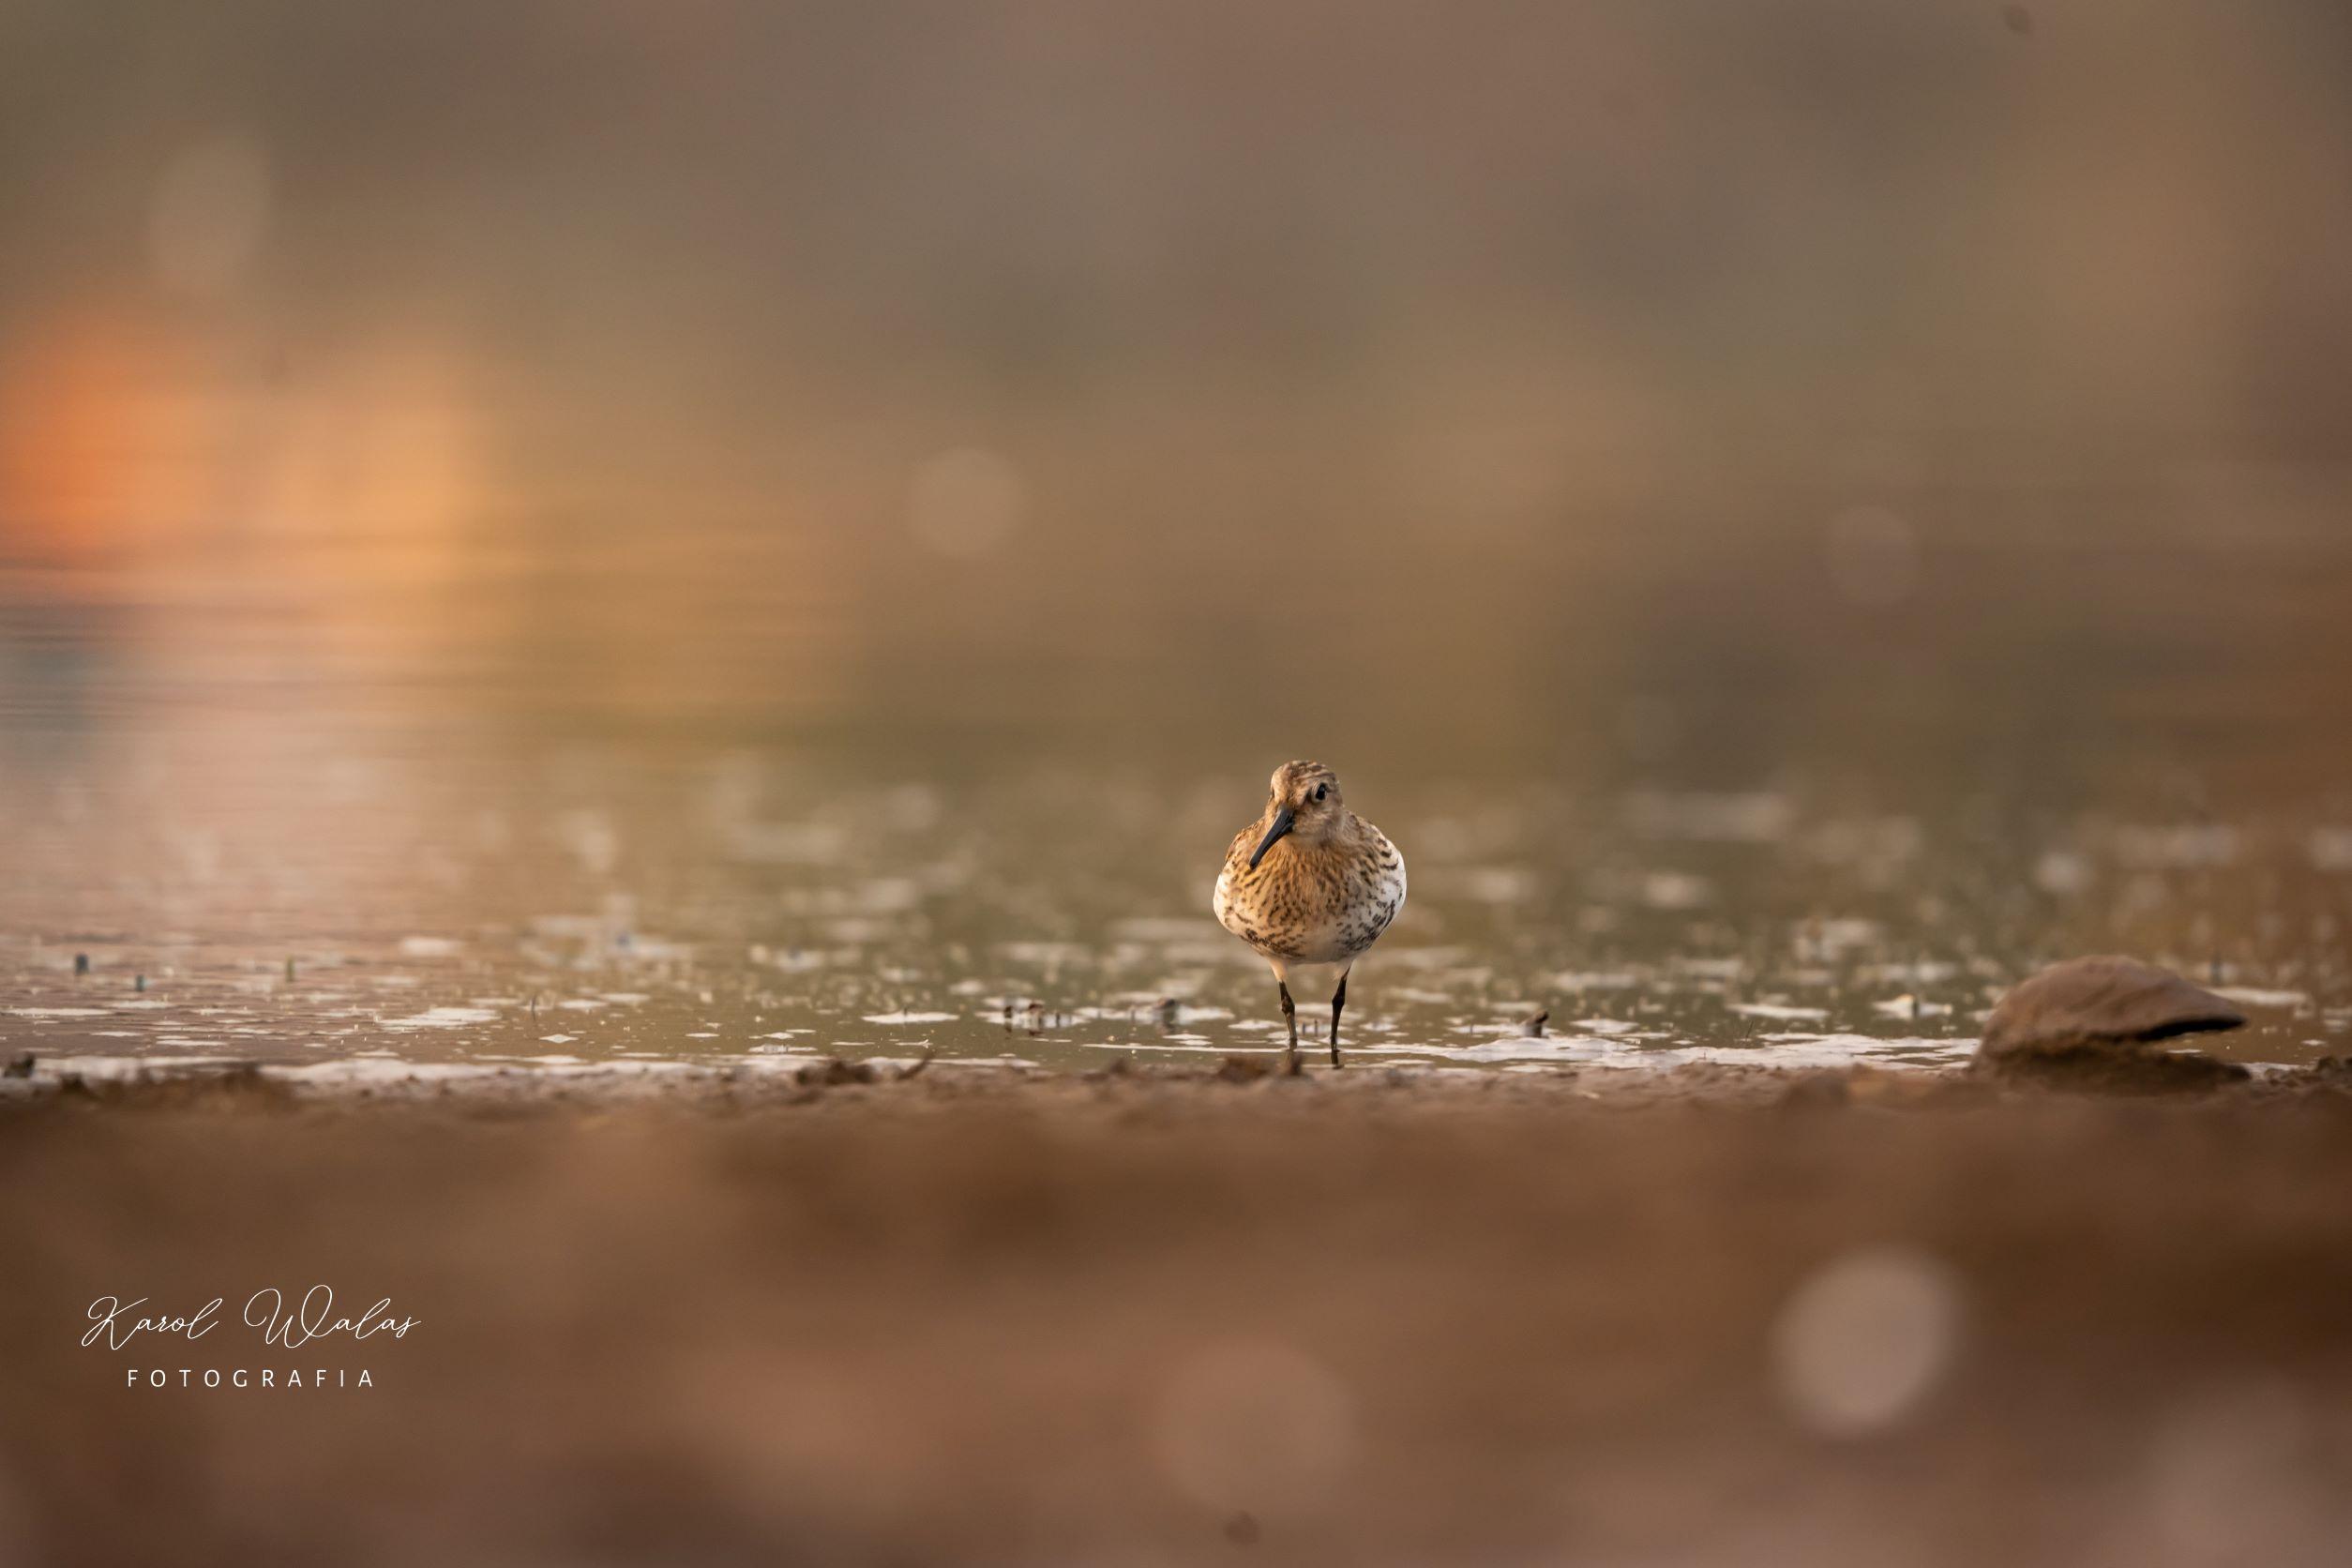 Zdjęcia ptaków autorstwa Karola Walasa